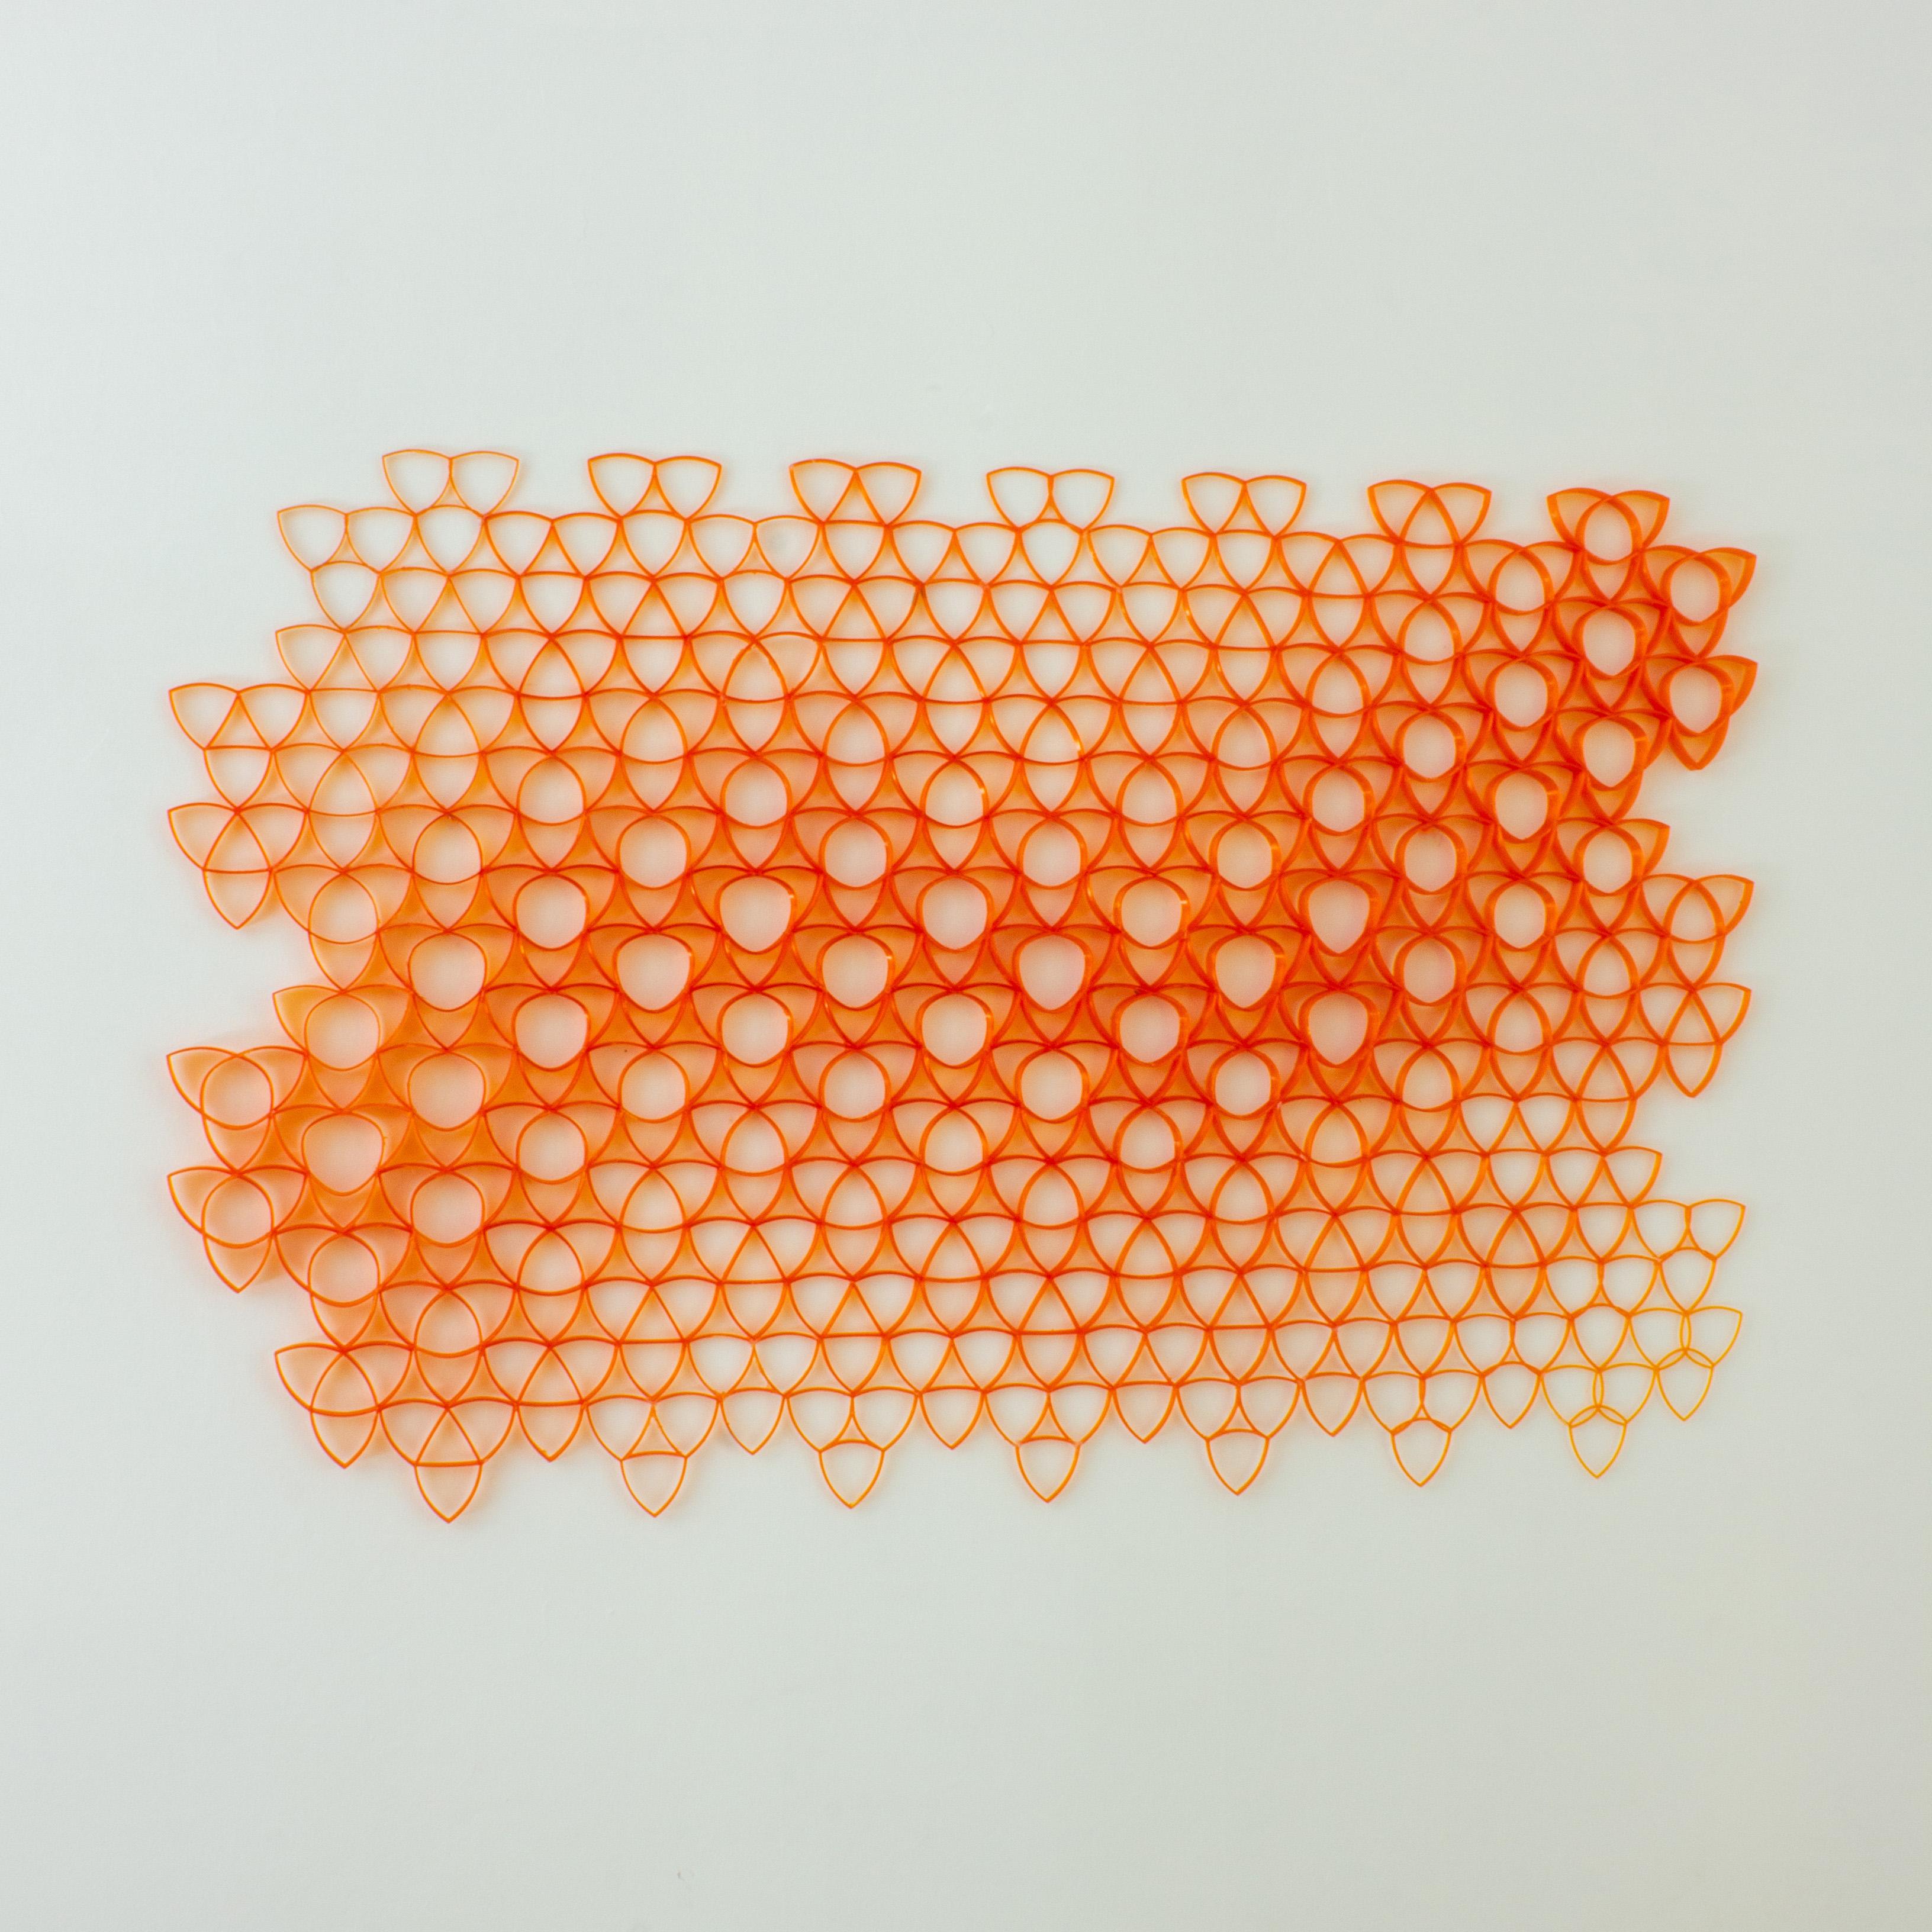 Art mural paramétrique, fabriqué à partir de plus de 100 bouteilles en plastique PET. 120 x 90 cm. (47 in x 35 in). Le dessin suit un motif géométrique triangulaire qui change d'échelle proportionnellement à mesure qu'il trace une trajectoire